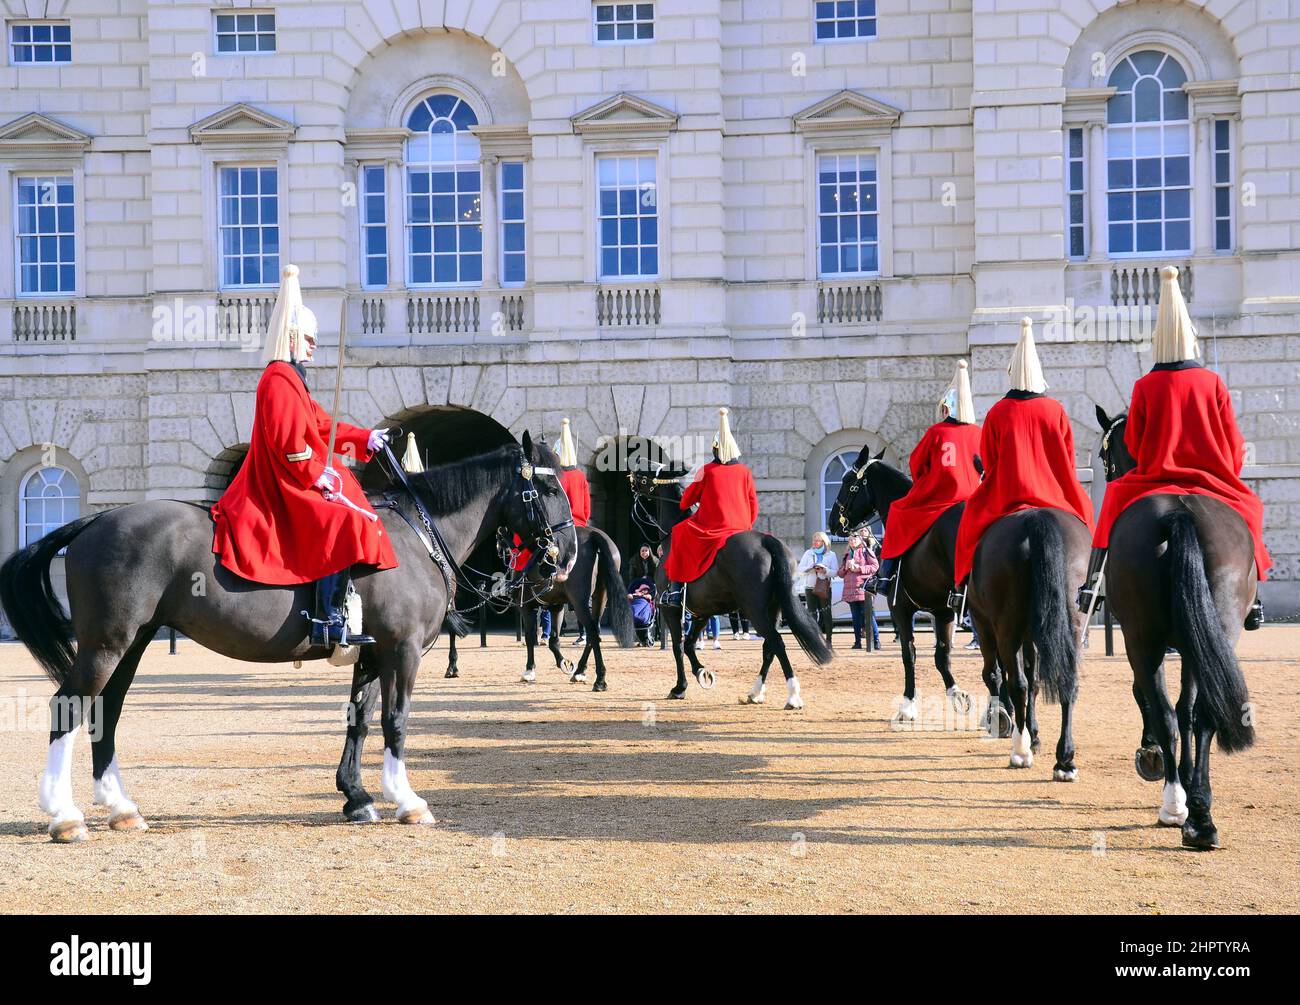 La cérémonie de changement de la Queen's Life Guard à l'occasion de la parade des gardes à cheval, Londres, Royaume-Uni. Soldats du Régiment à cheval de cavalerie de la maison, gardes de vie. Banque D'Images